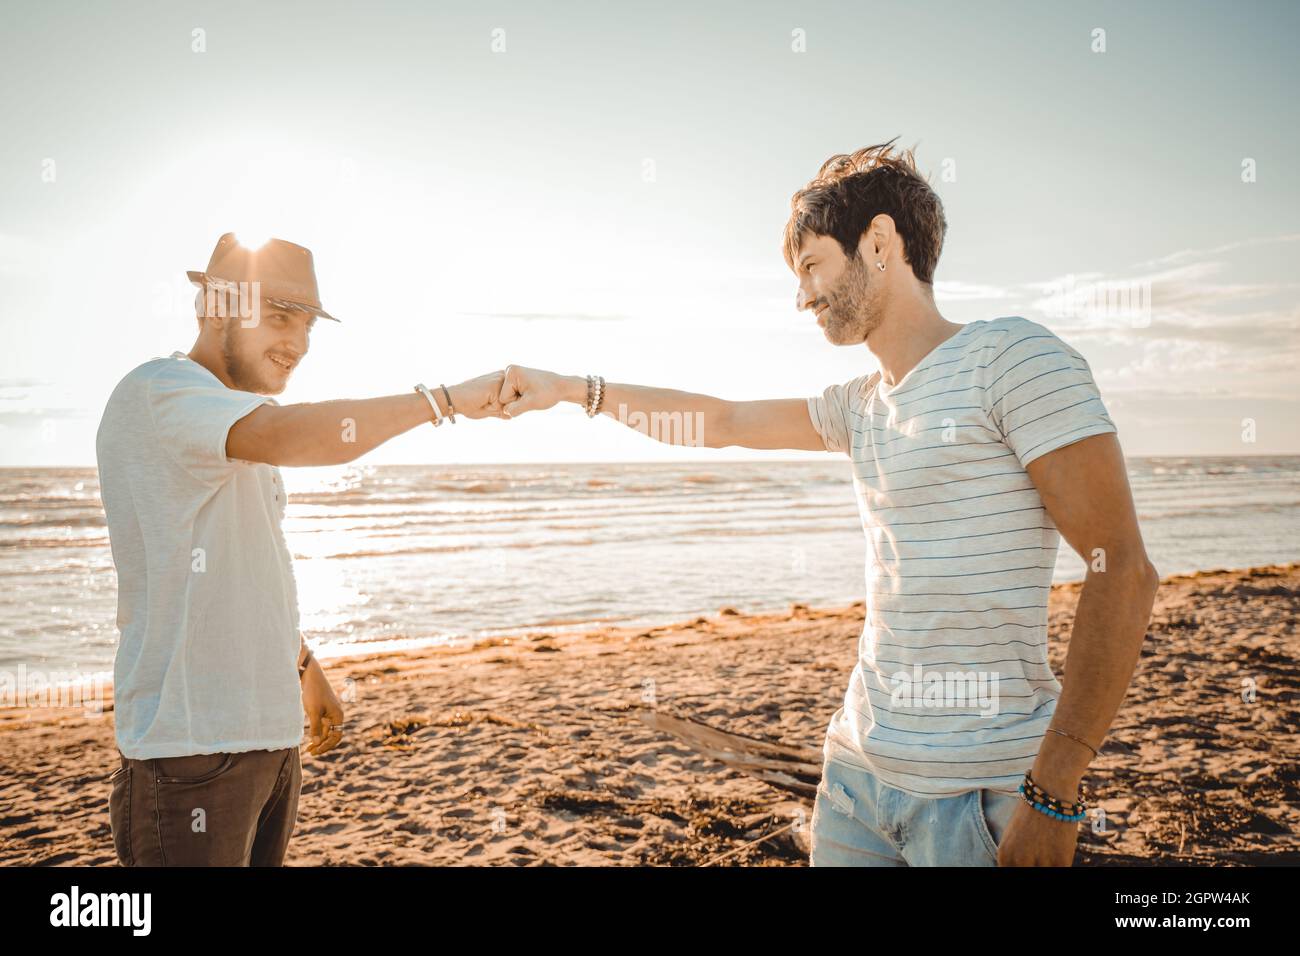 Zwei kaukasische lächelnde Jungs am Strand begrüßen sich gegenseitig mit einer Faust - treffen Konzept, zeigen Respekt und Freundschaft, die eine gute Beziehung haben Stockfoto